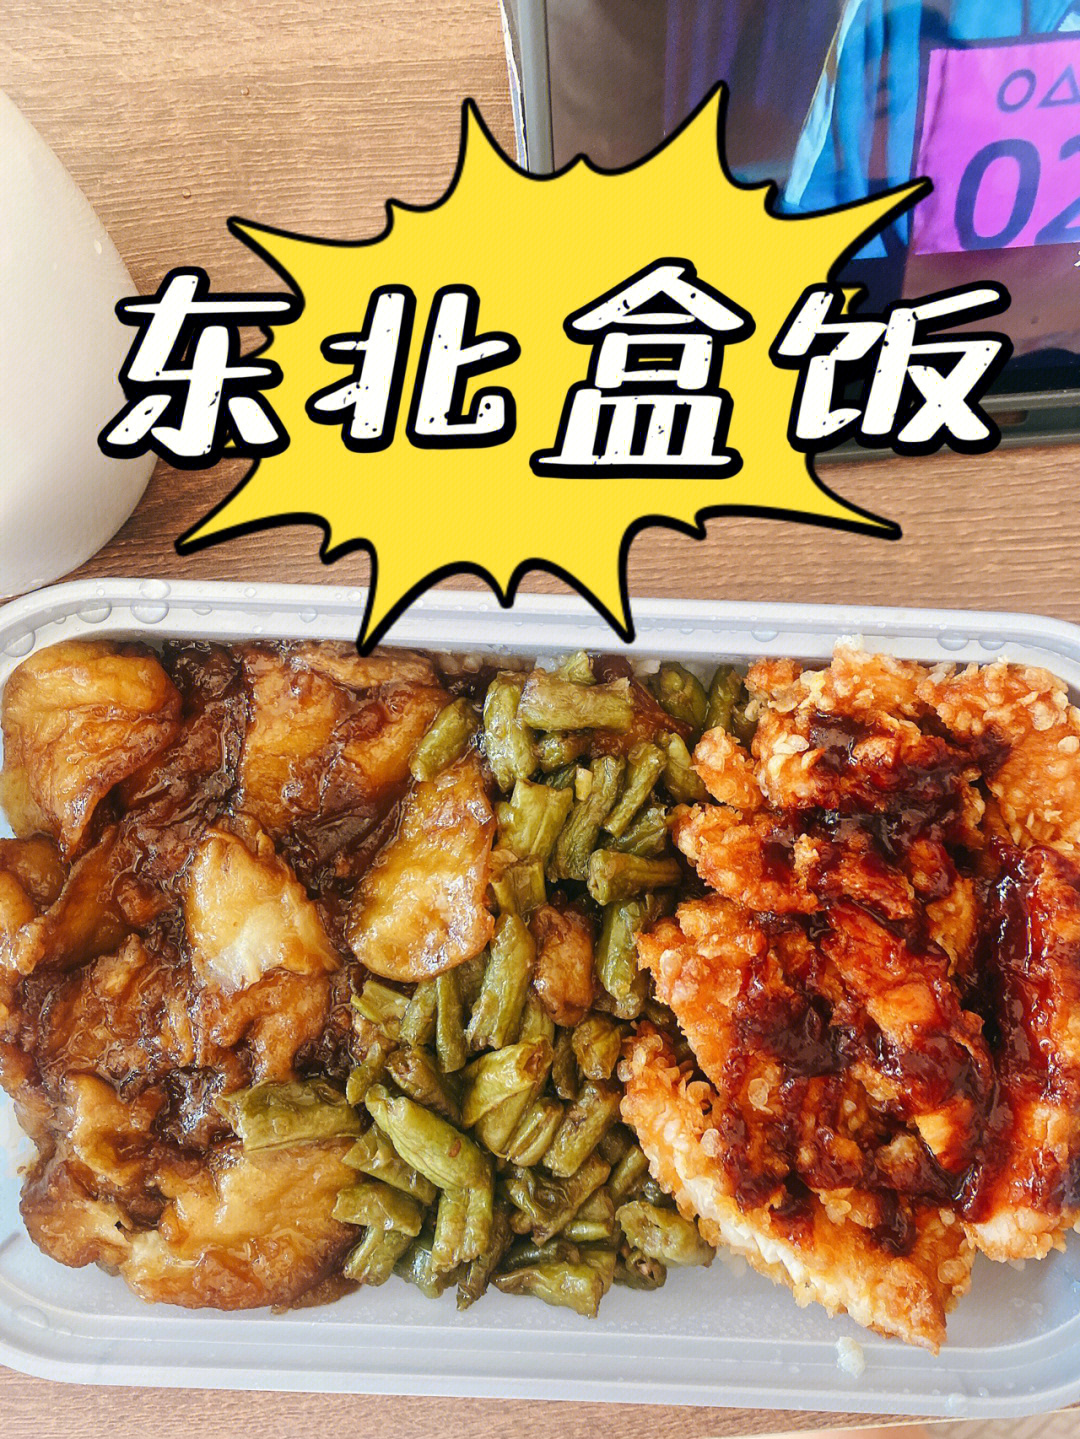 北京好吃外卖十一假期第一餐东北老盒饭